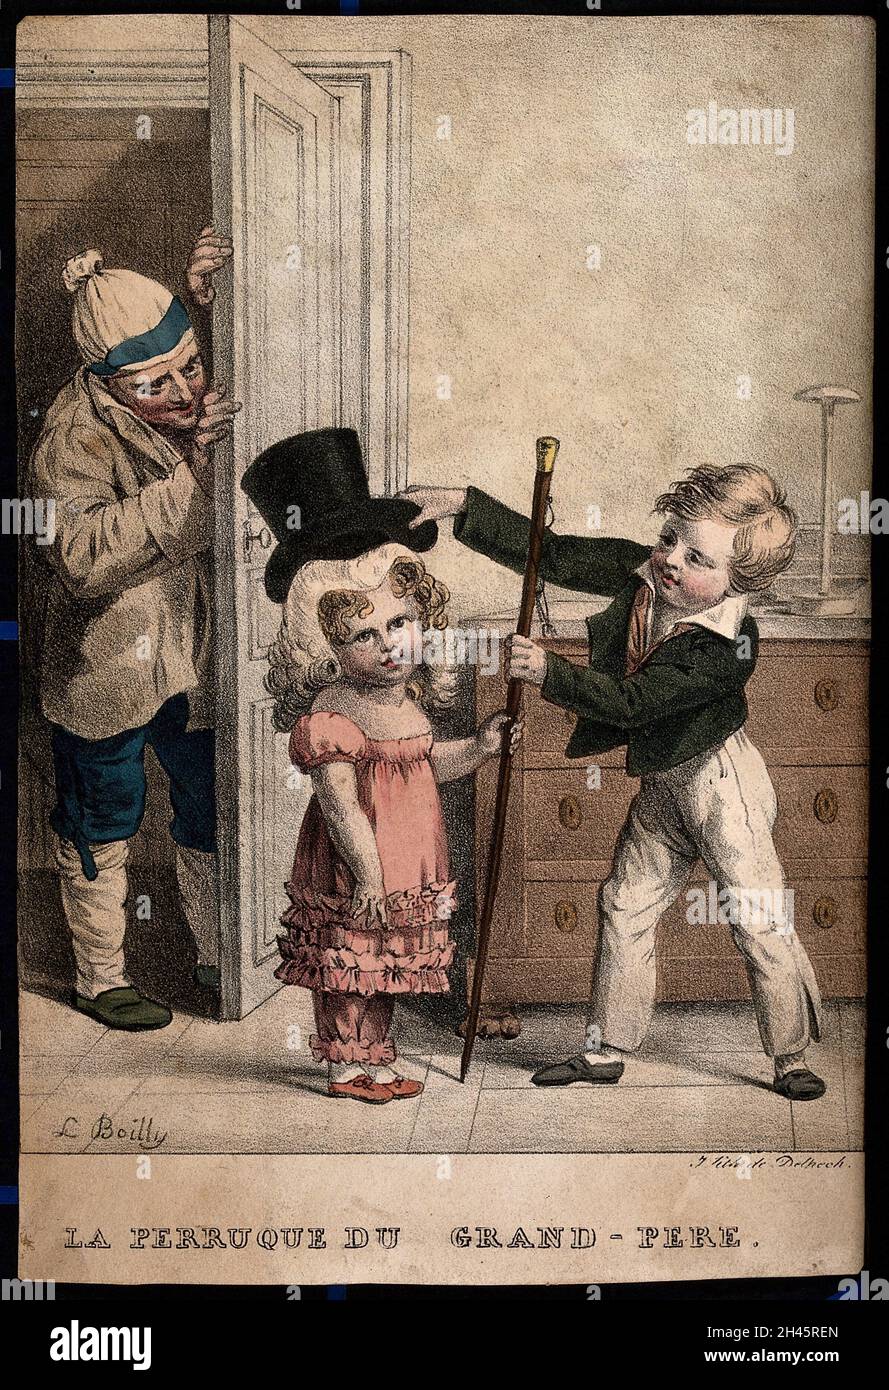 Un niño pequeño coloca la peluca y el sombrero de su abuelo sobre su  hermana menor; el abuelo mira con diversión. Litografía coloreada por L.  Boilly, 1824 Fotografía de stock - Alamy